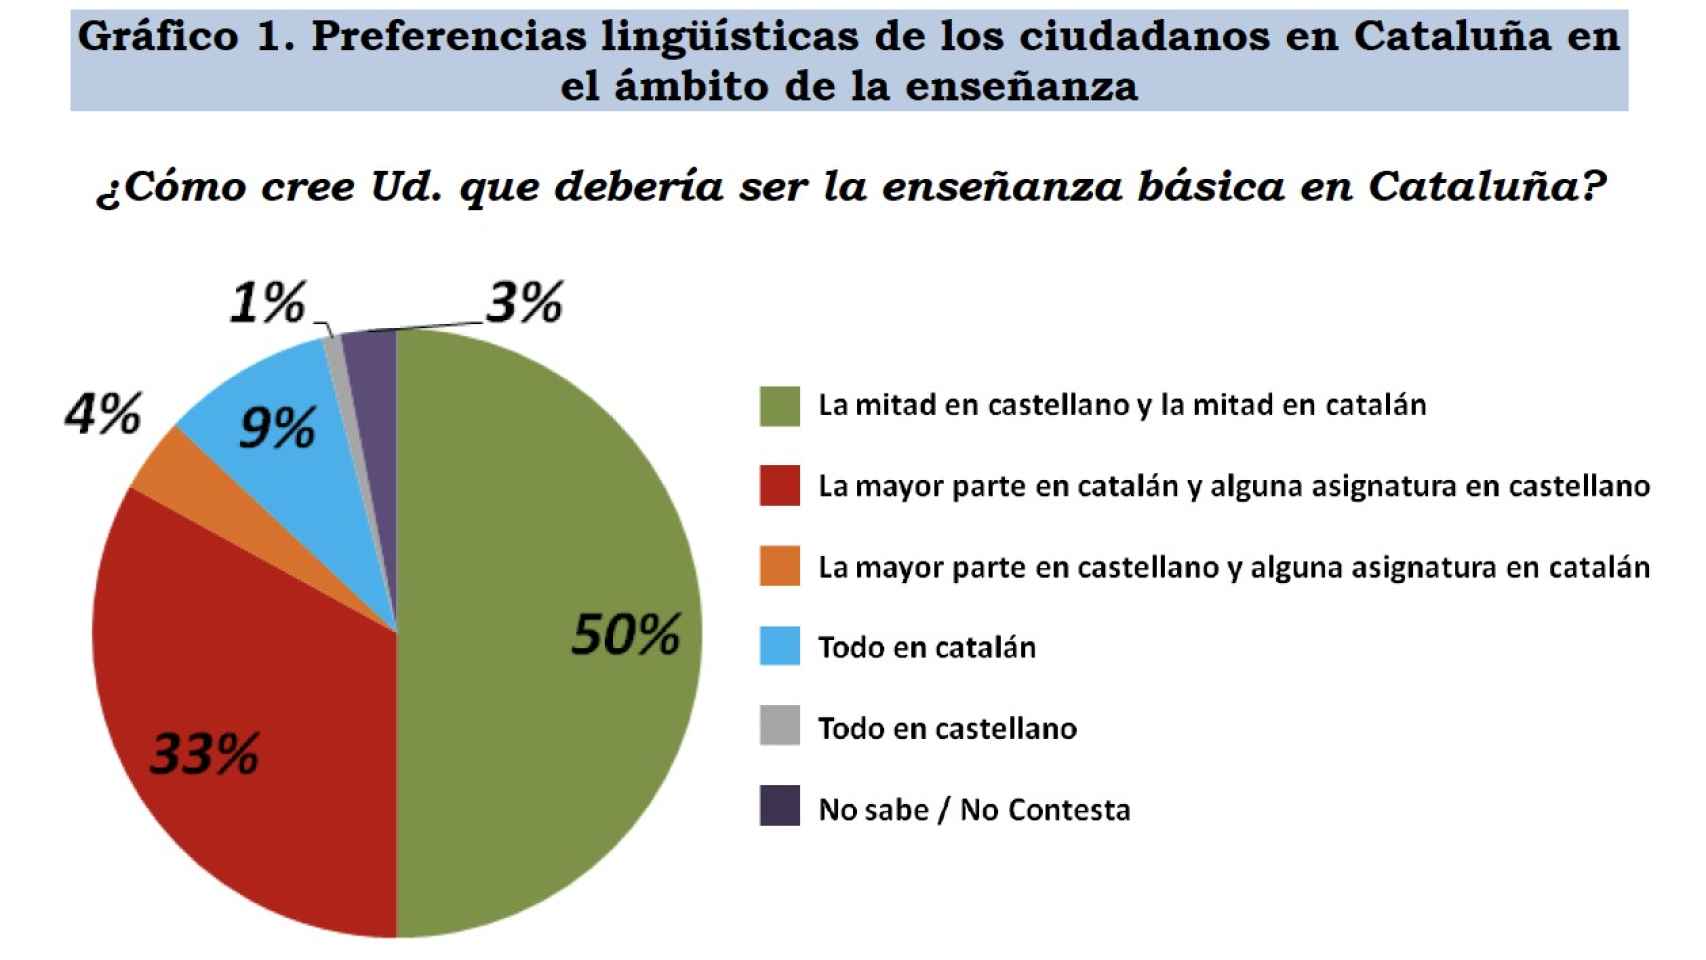 Estudio del CIS sobre preferencias lingüísticas de los ciudadanos catalanes.